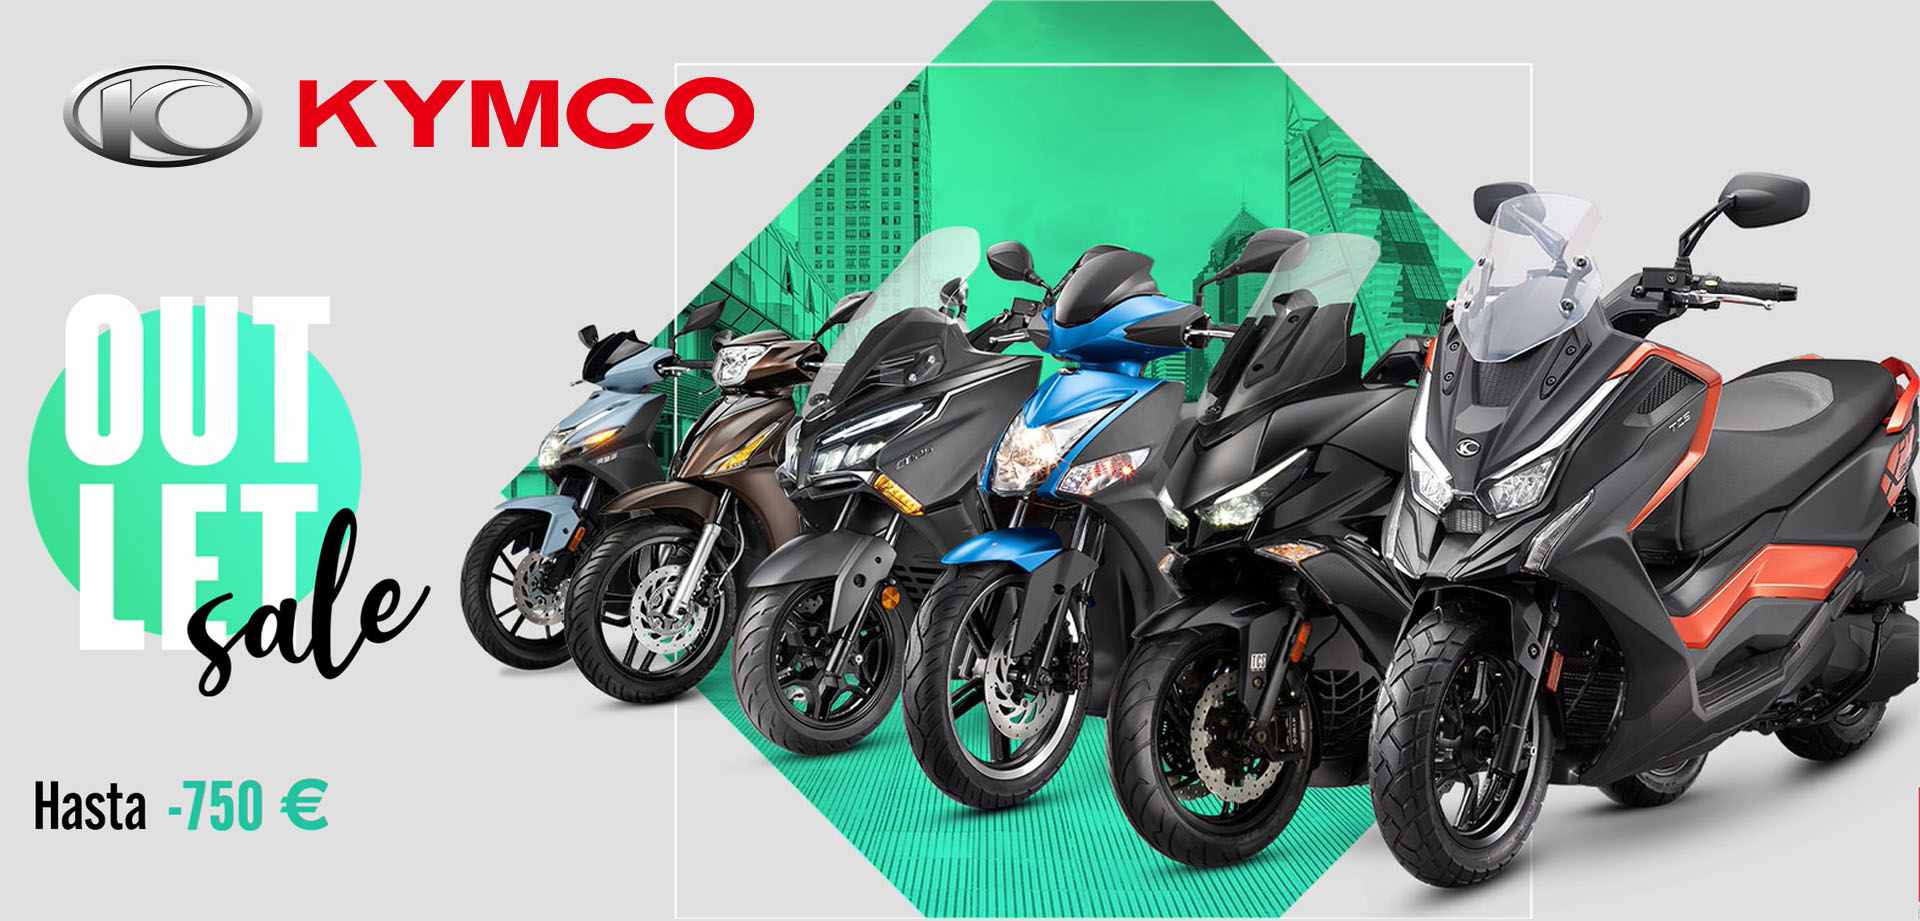 tienda-motos-kymco-madrid-motos-nuevas-kymco-outlet